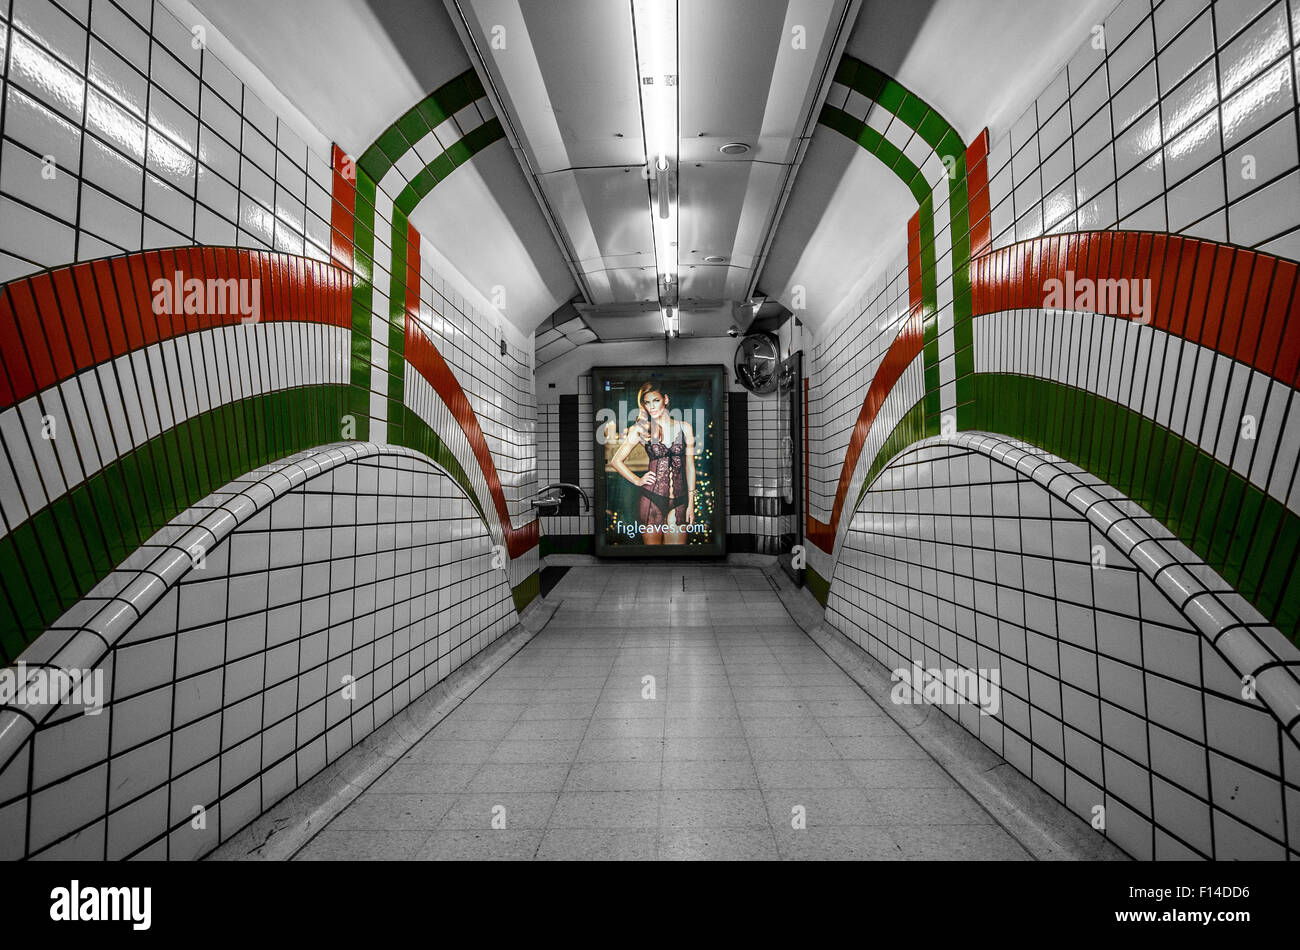 Le métro de Londres avec couleur sélective mettant en lumière certains détails. Banque D'Images